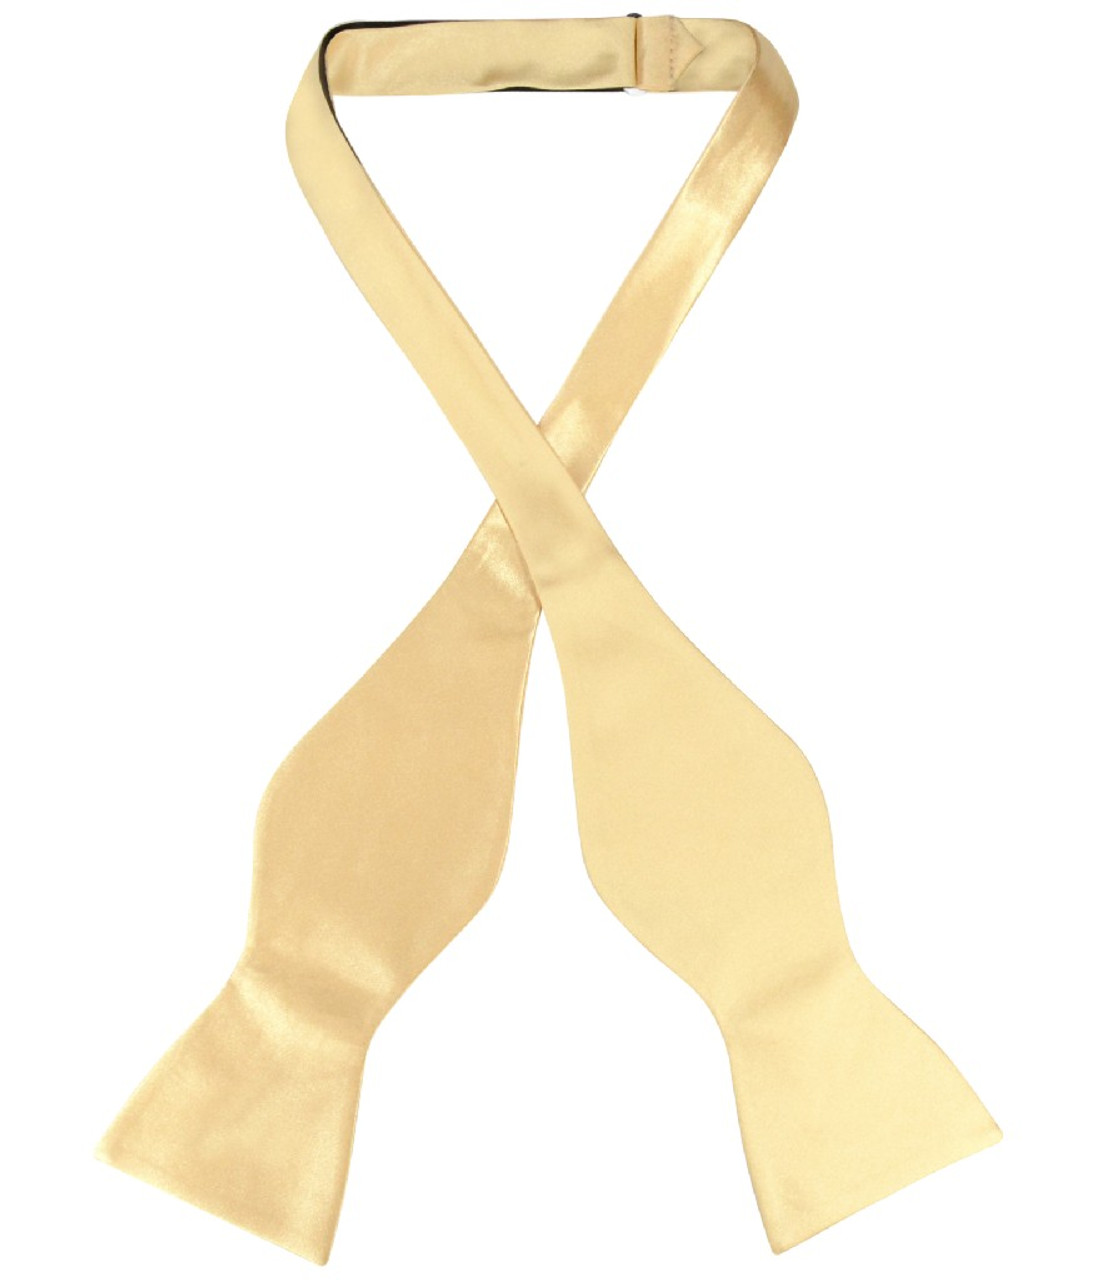 Biagio SELF TIE Bow Tie Solid GOLD Color Mens BowTie